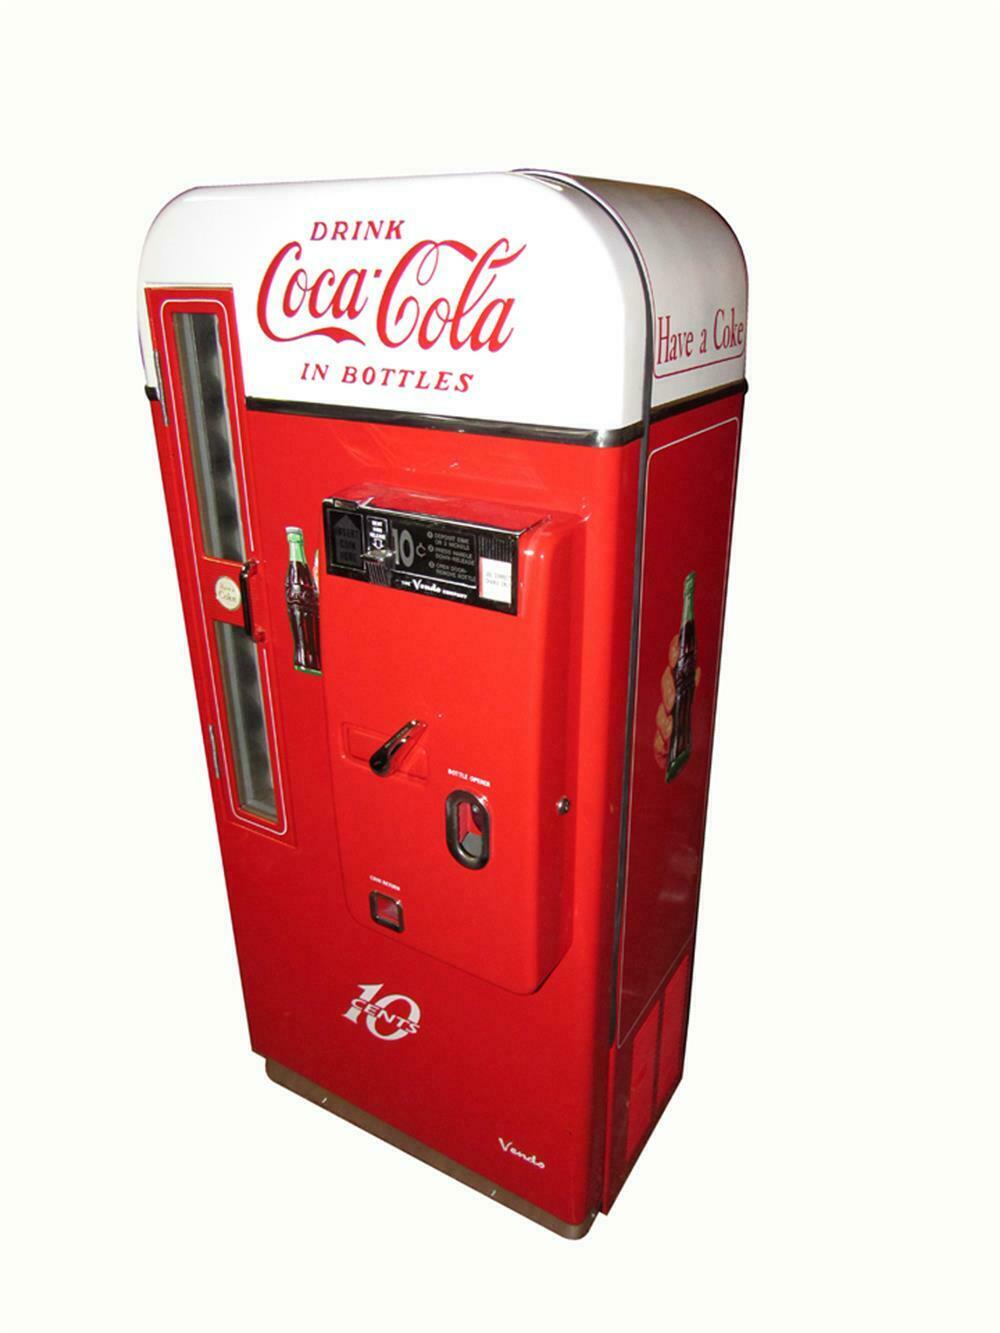 Magnificent professionally restored 1950s Coca-Cola Vendo 81